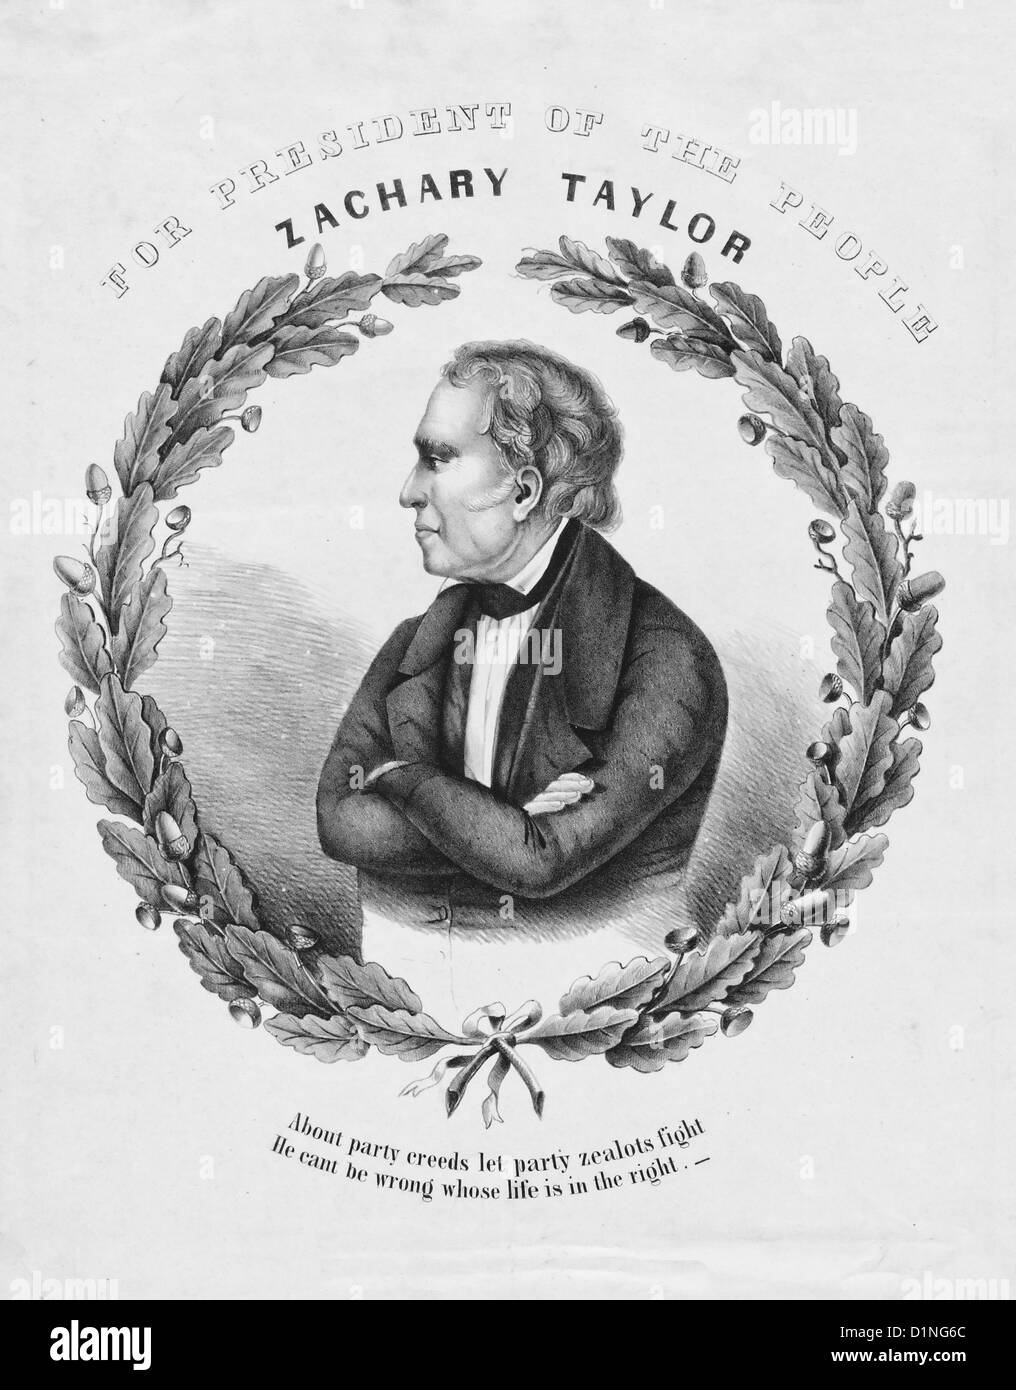 Zachary Taylor - Per il Presidente del popolo - campagna di manifesti per il 1848 USA elezioni presidenziali Foto Stock